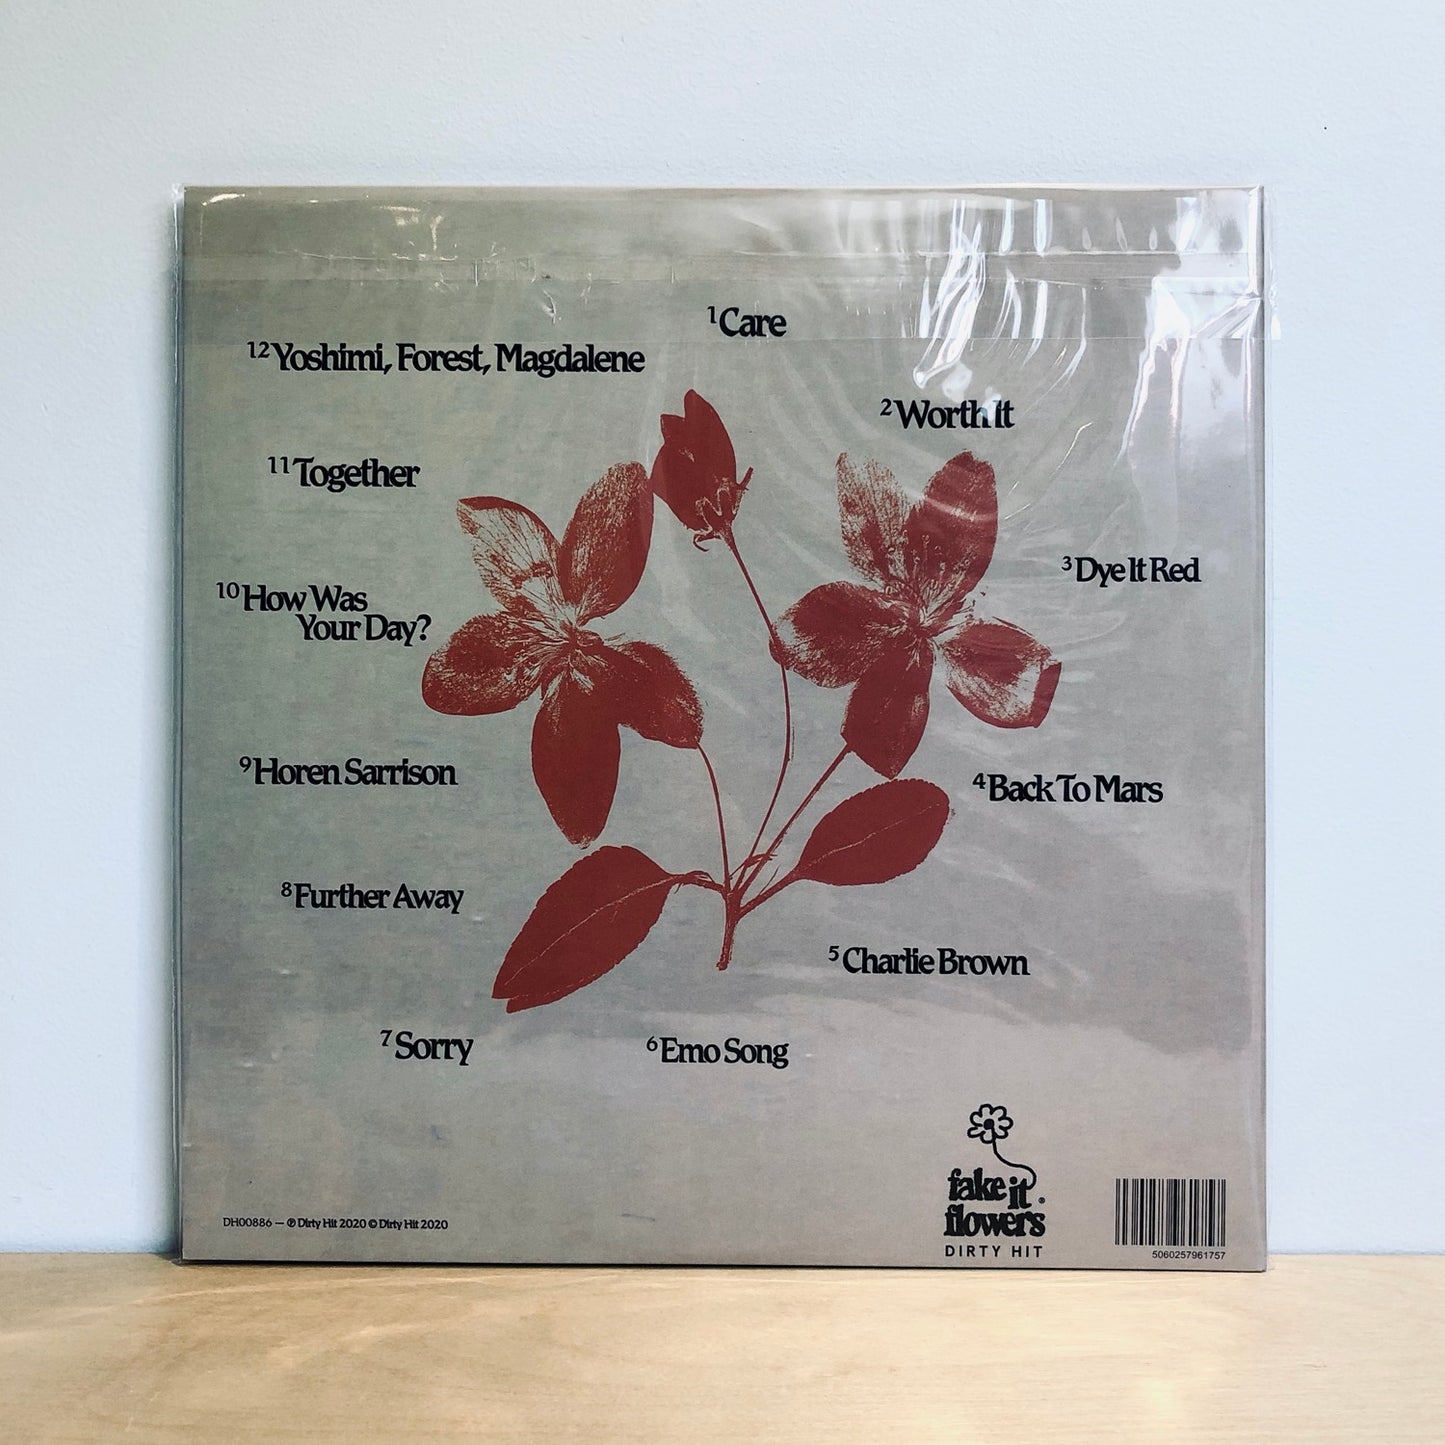 Beabadoobee - Fake It Flowers. LP